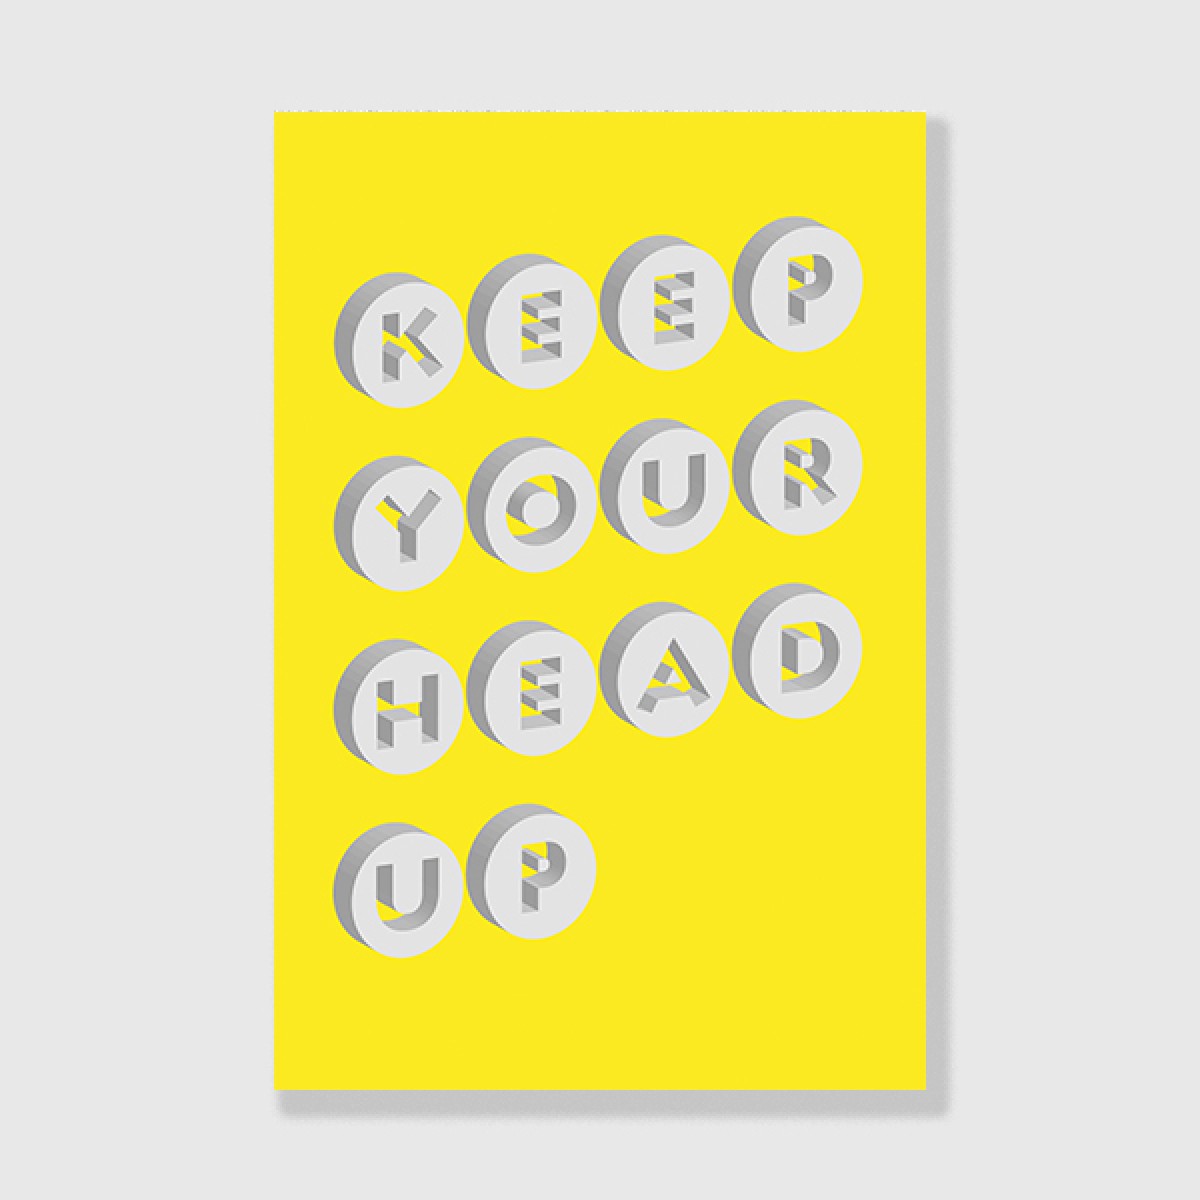 ZEITLOOPS "Keep your head up", Posterprint 40x60 cm